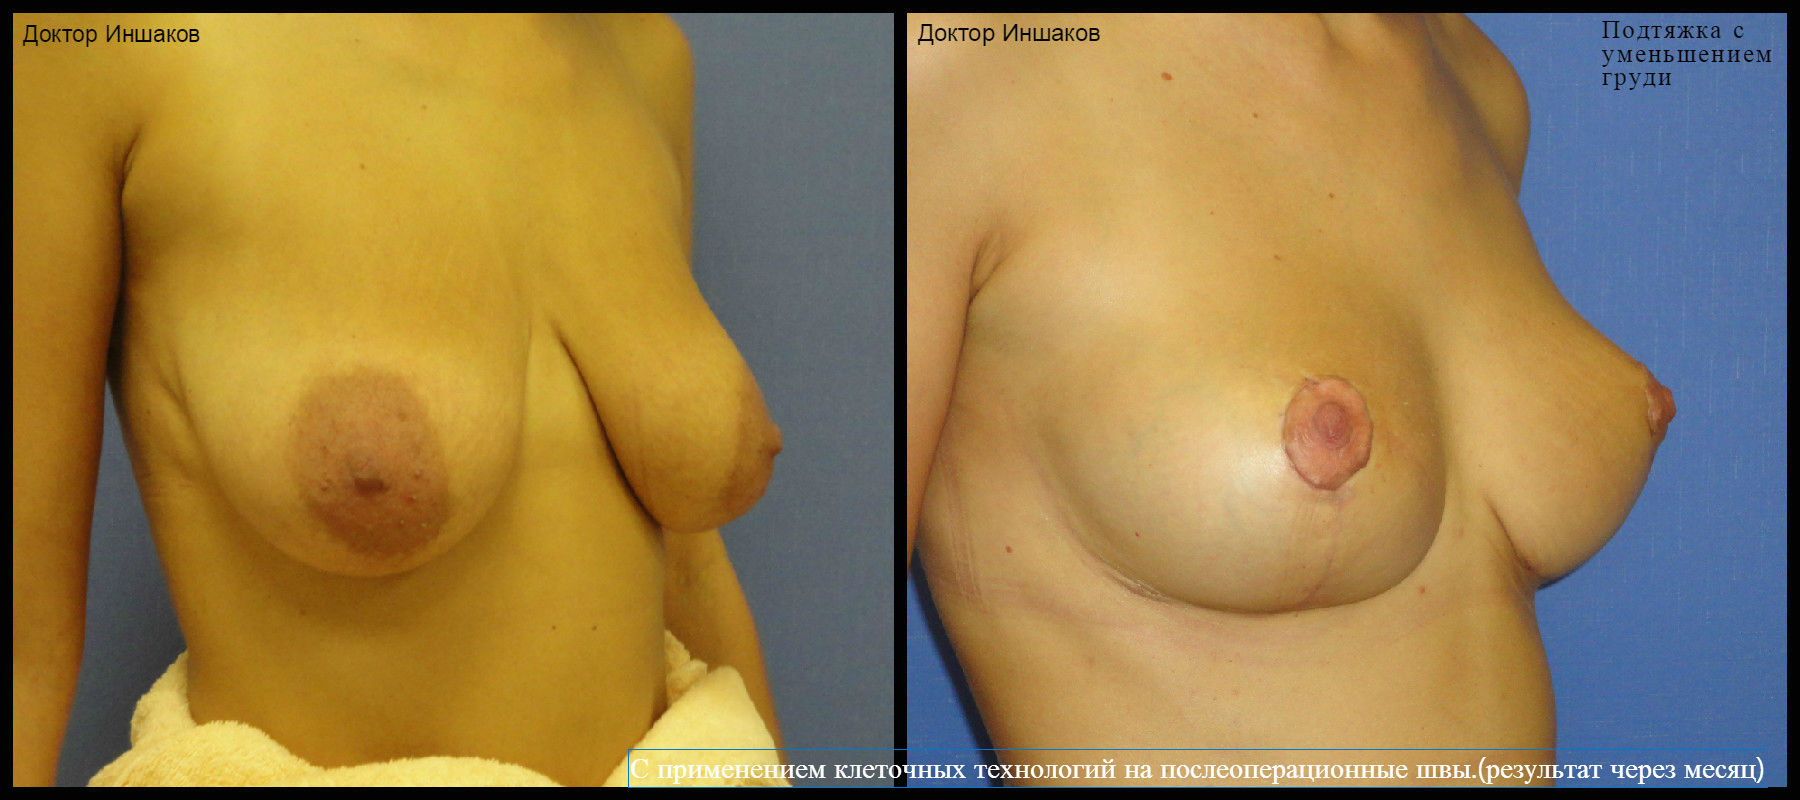 уменьшение груди у женщин в домашних условиях фото 56